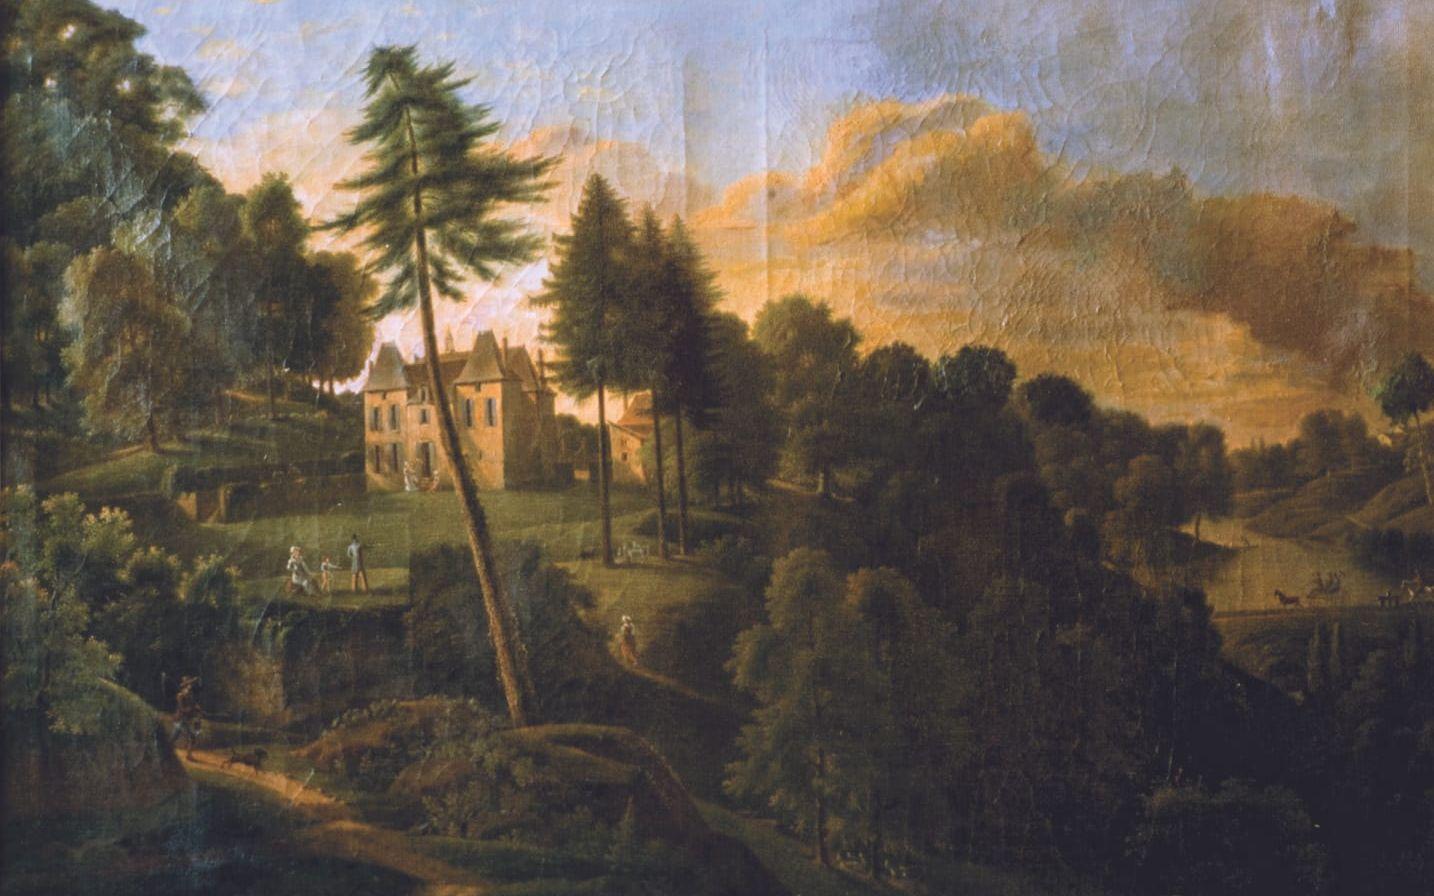 Avbildat. Oljemålningen av Chateau du Grand Val gjordes av François Pinot du Petit-Bois i slutet av 1700-talet.